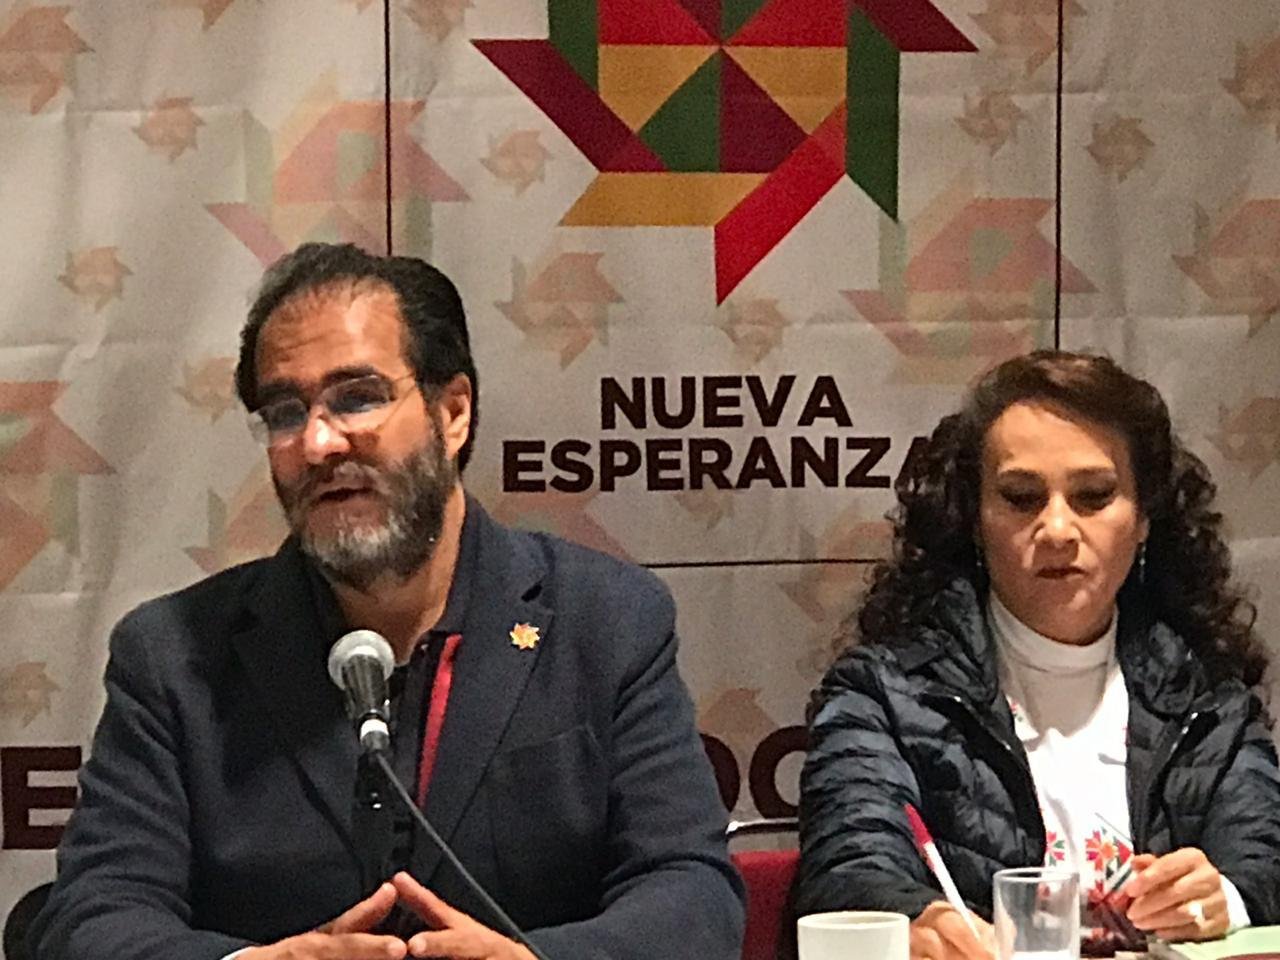 Movimiento de René Bejarano ofrece apoyos para estancias infantiles, de  acuerdo con audios difundidos por Milenio TV - Etcétera